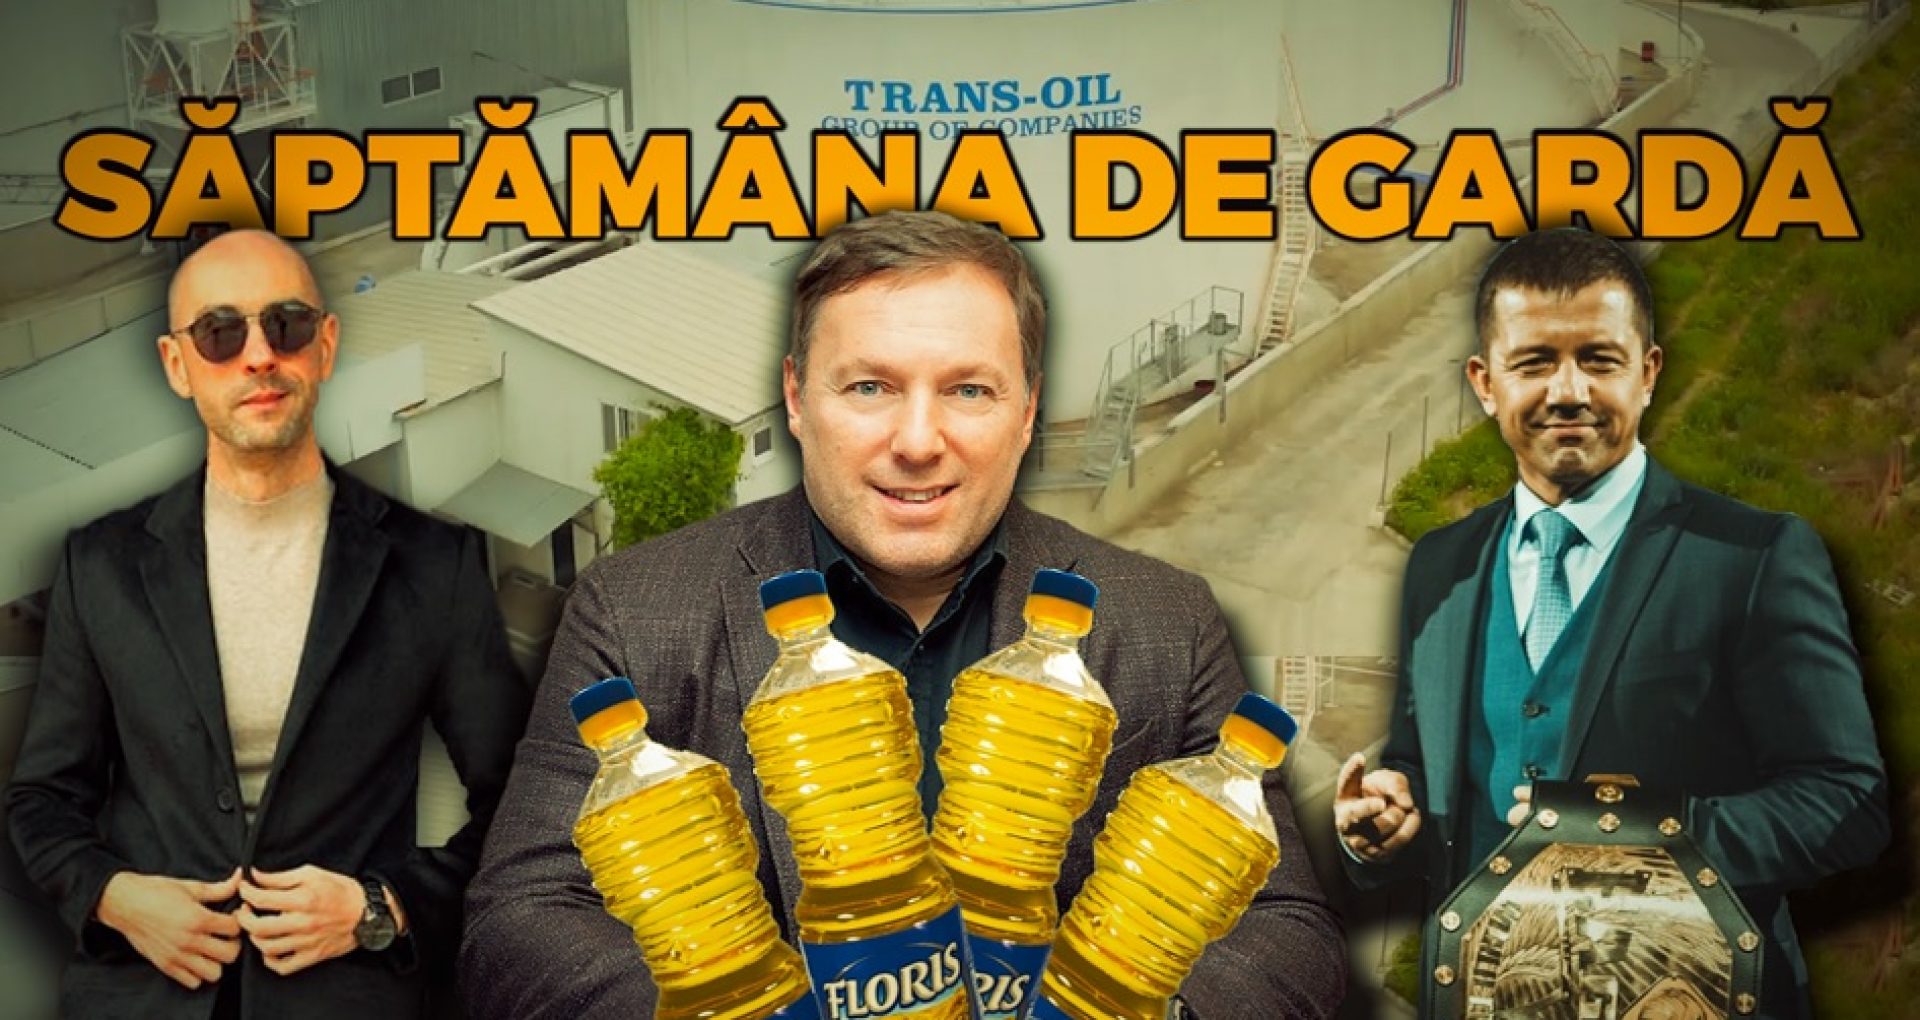 VIDEO/ Gaz mai scump, nouă șefă la PA, piața uleiului controlată de o singură companie, Damir scos de sub arest și R. Moldova condamnată la CtEDO în cazul Boboc | Săptămâna de Gardă